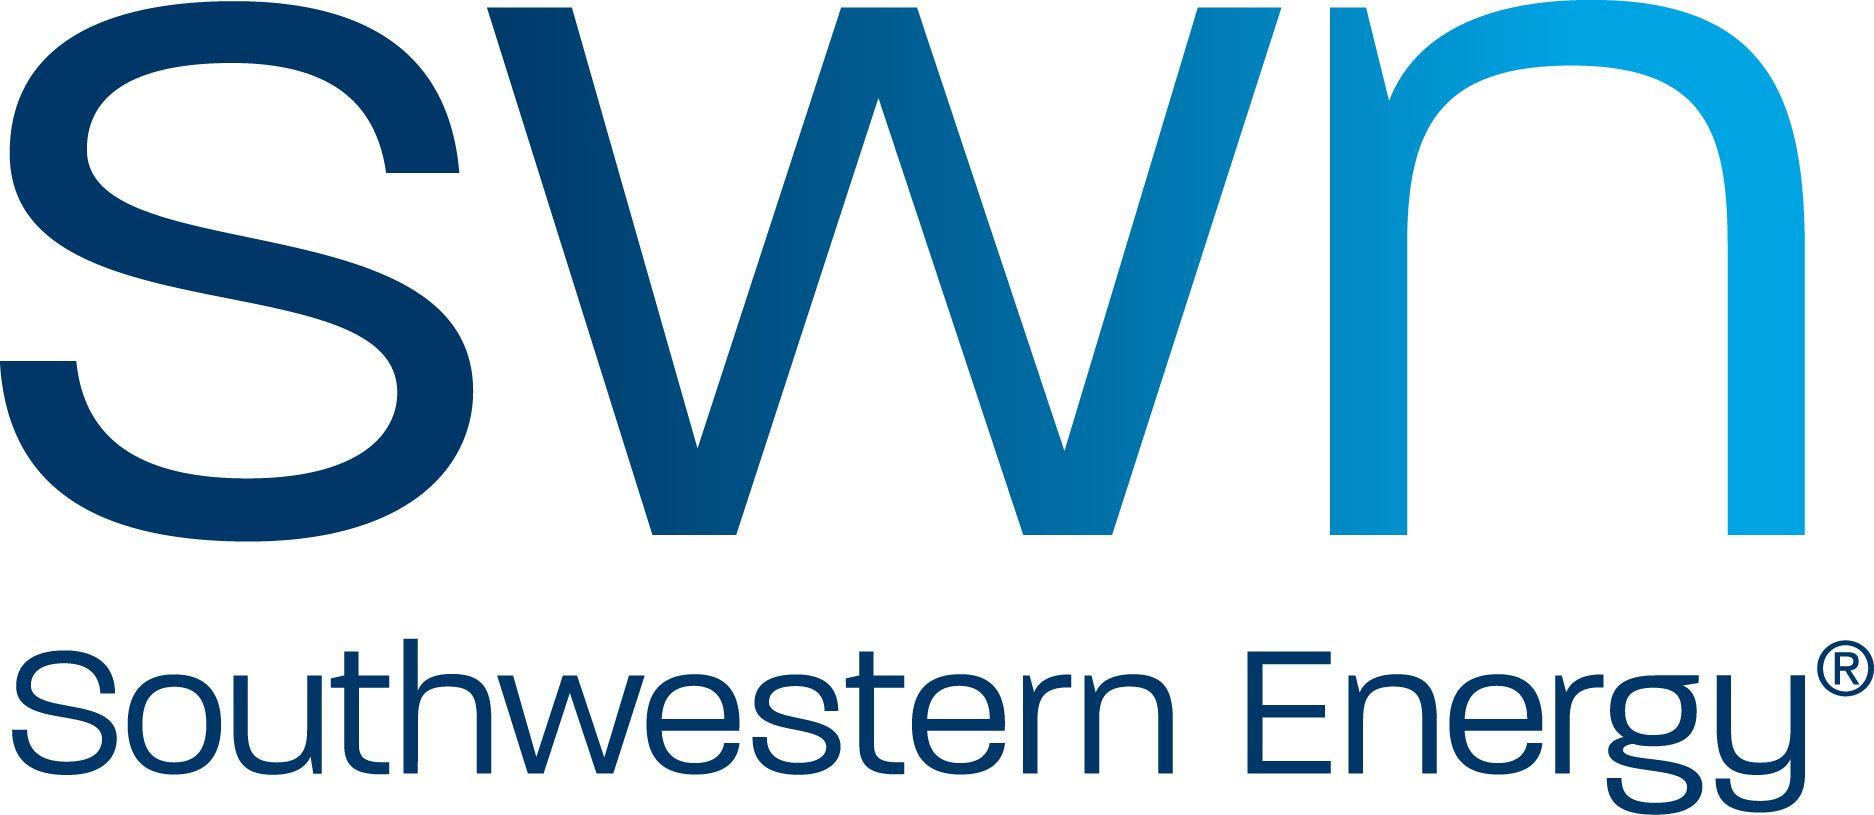 Southwestern Logo - Southwestern Energy